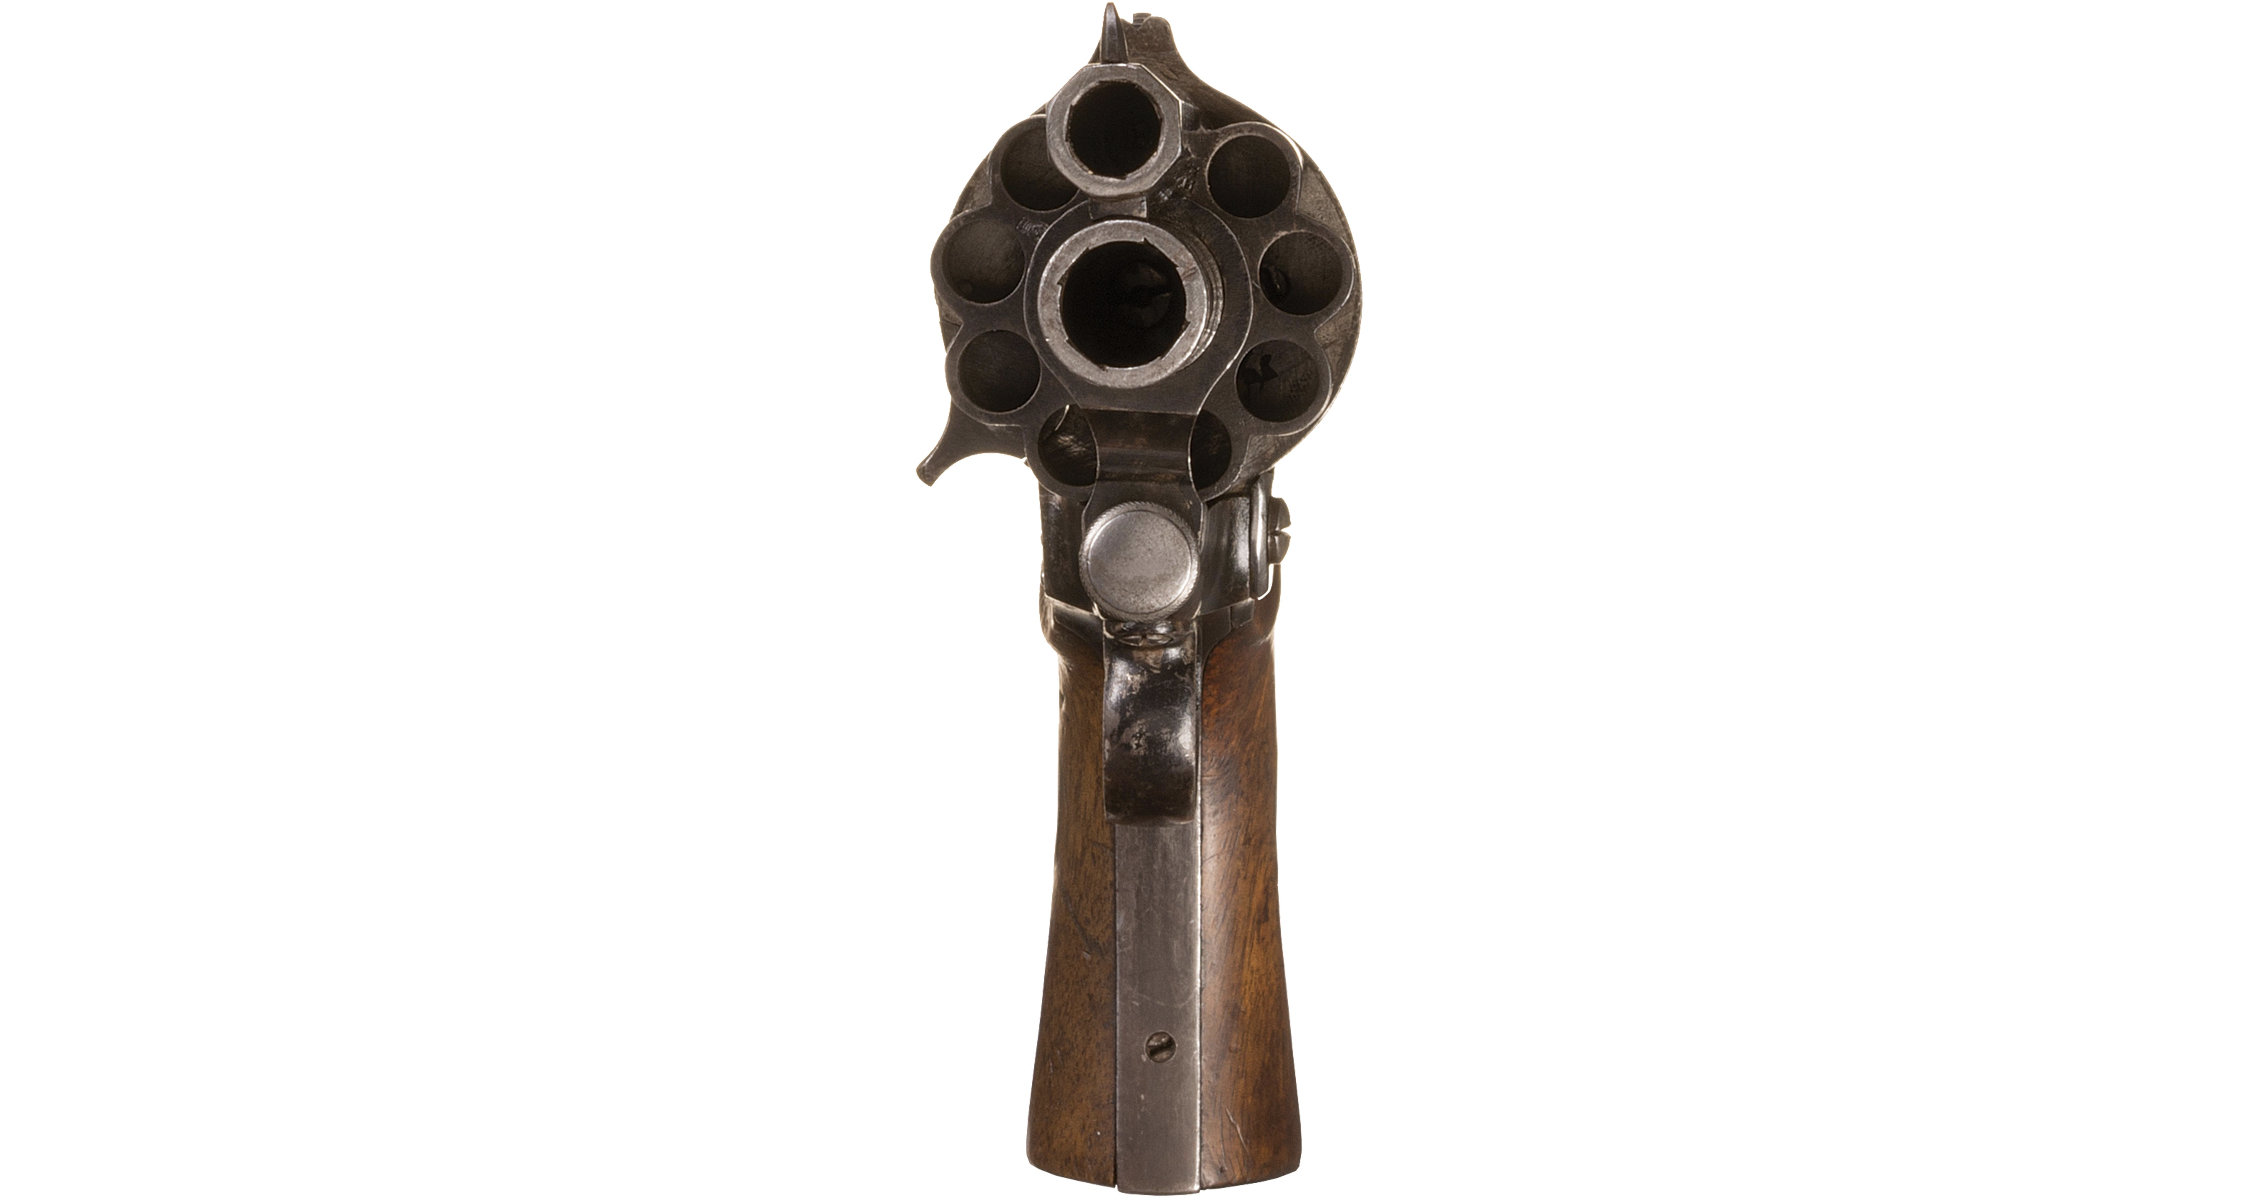 The LeMat Revolver Was a Civil War-Era Pistol That Doubled as a Shotgun